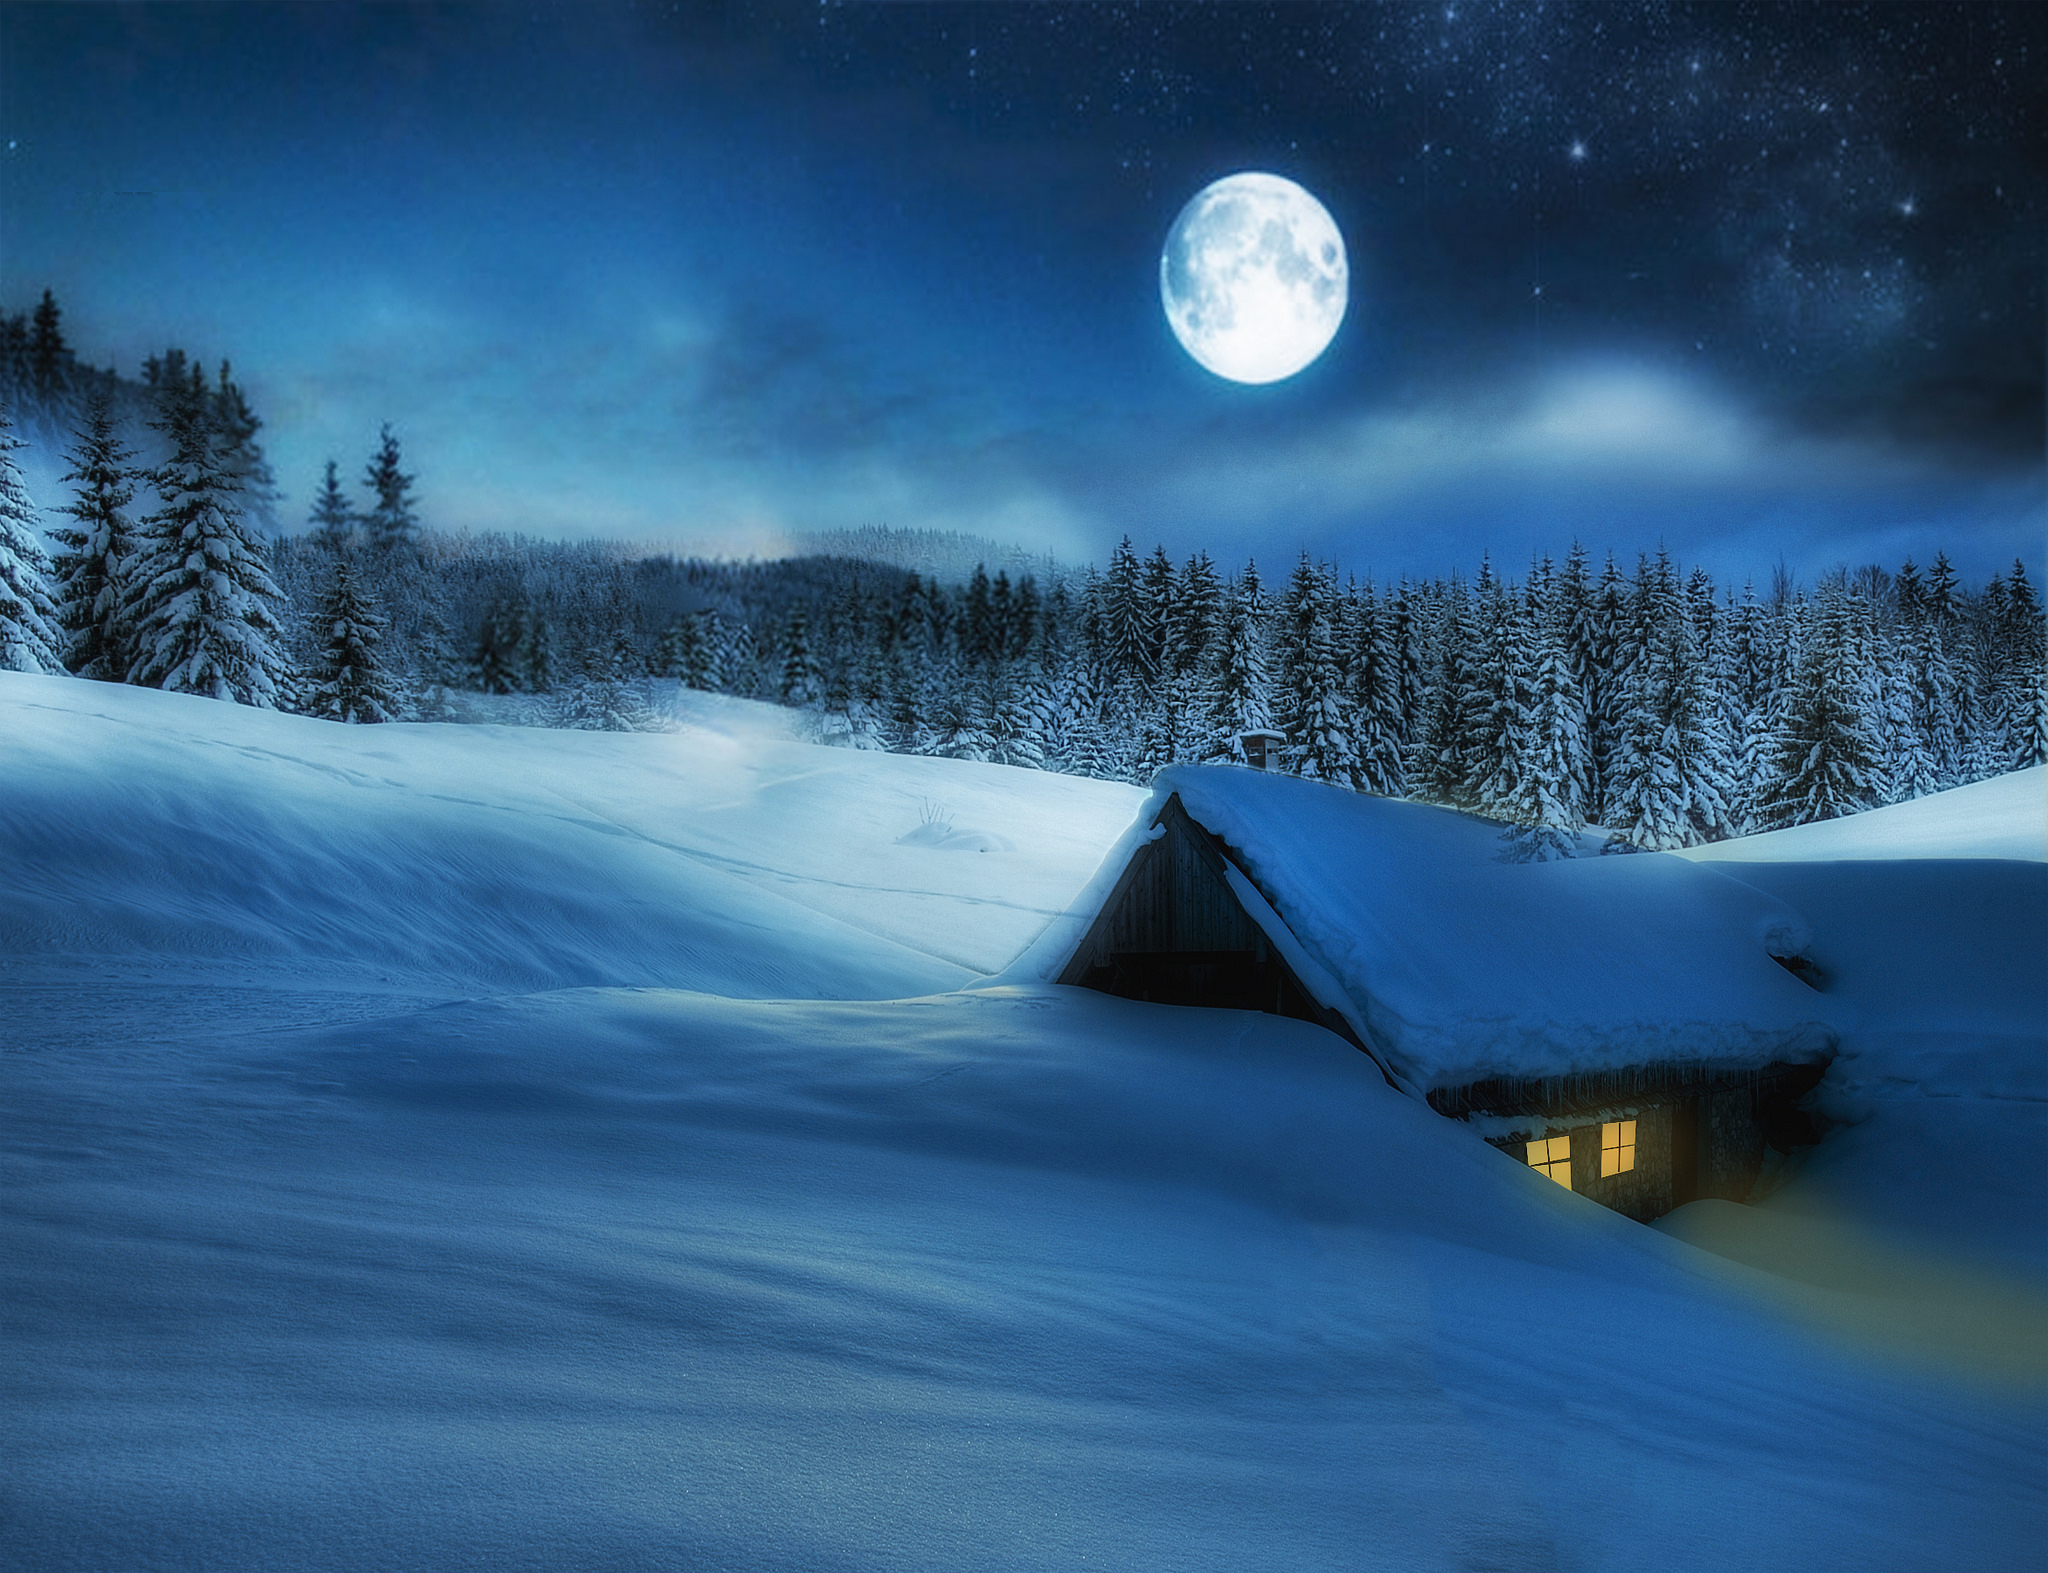 Скачать обои бесплатно Зима, Звезды, Ночь, Луна, Снег, Лес, Домик, Фотографии картинка на рабочий стол ПК